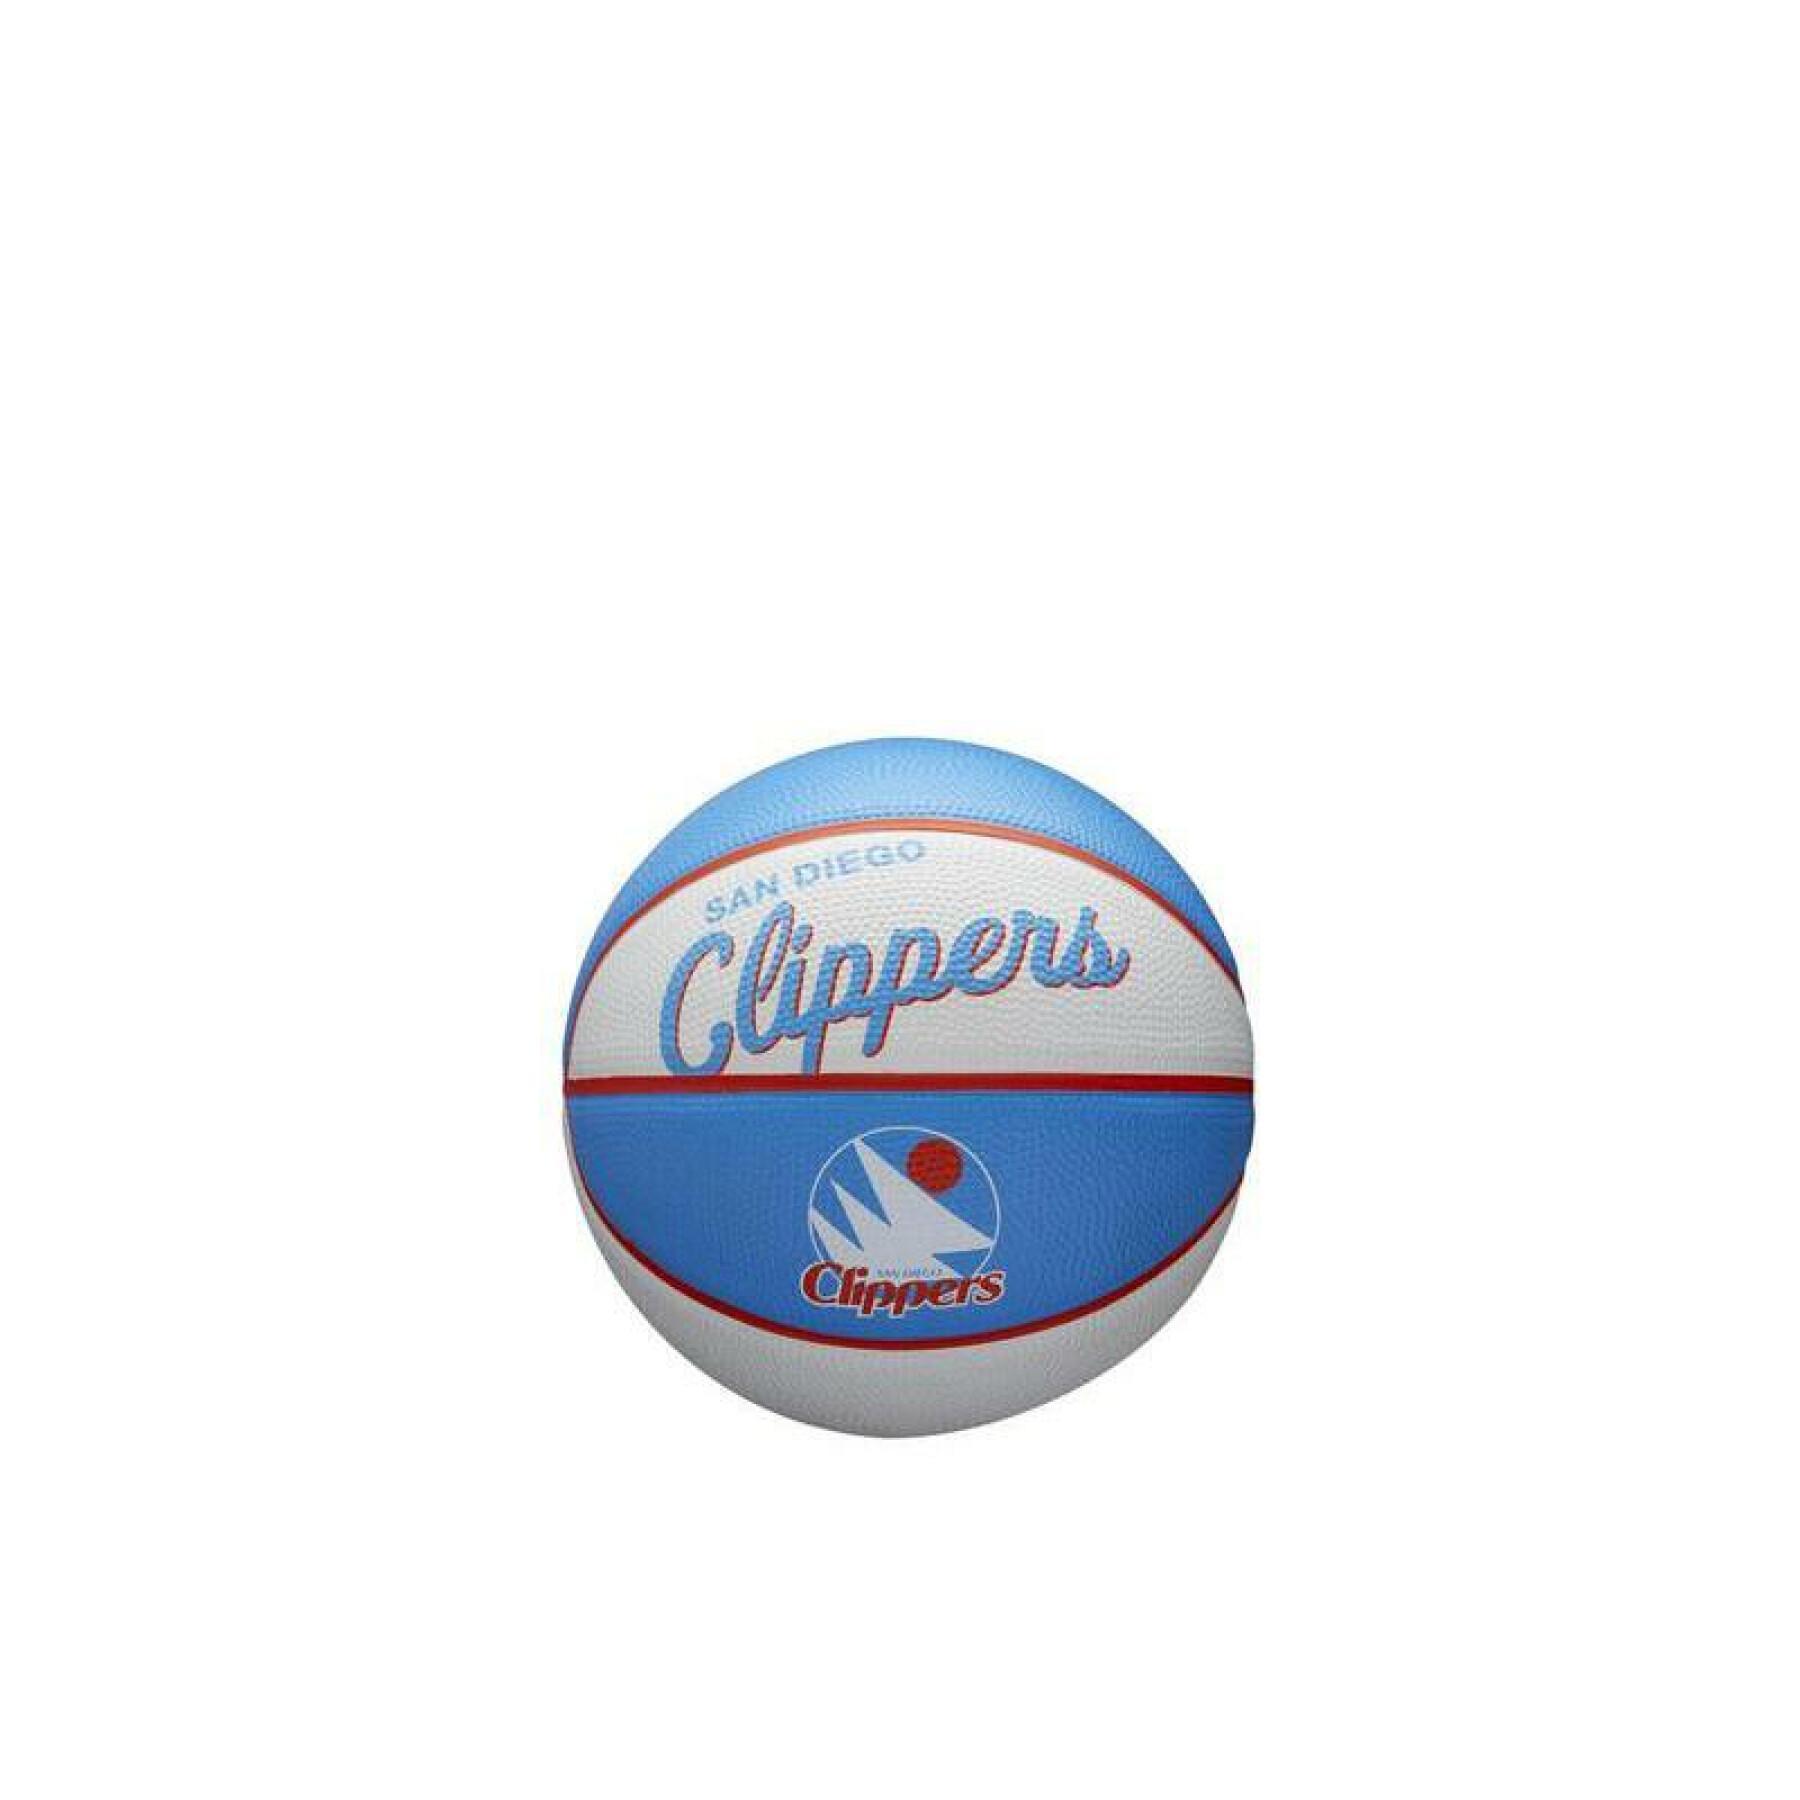 Mini bola nba retro Los Angeles Clippers